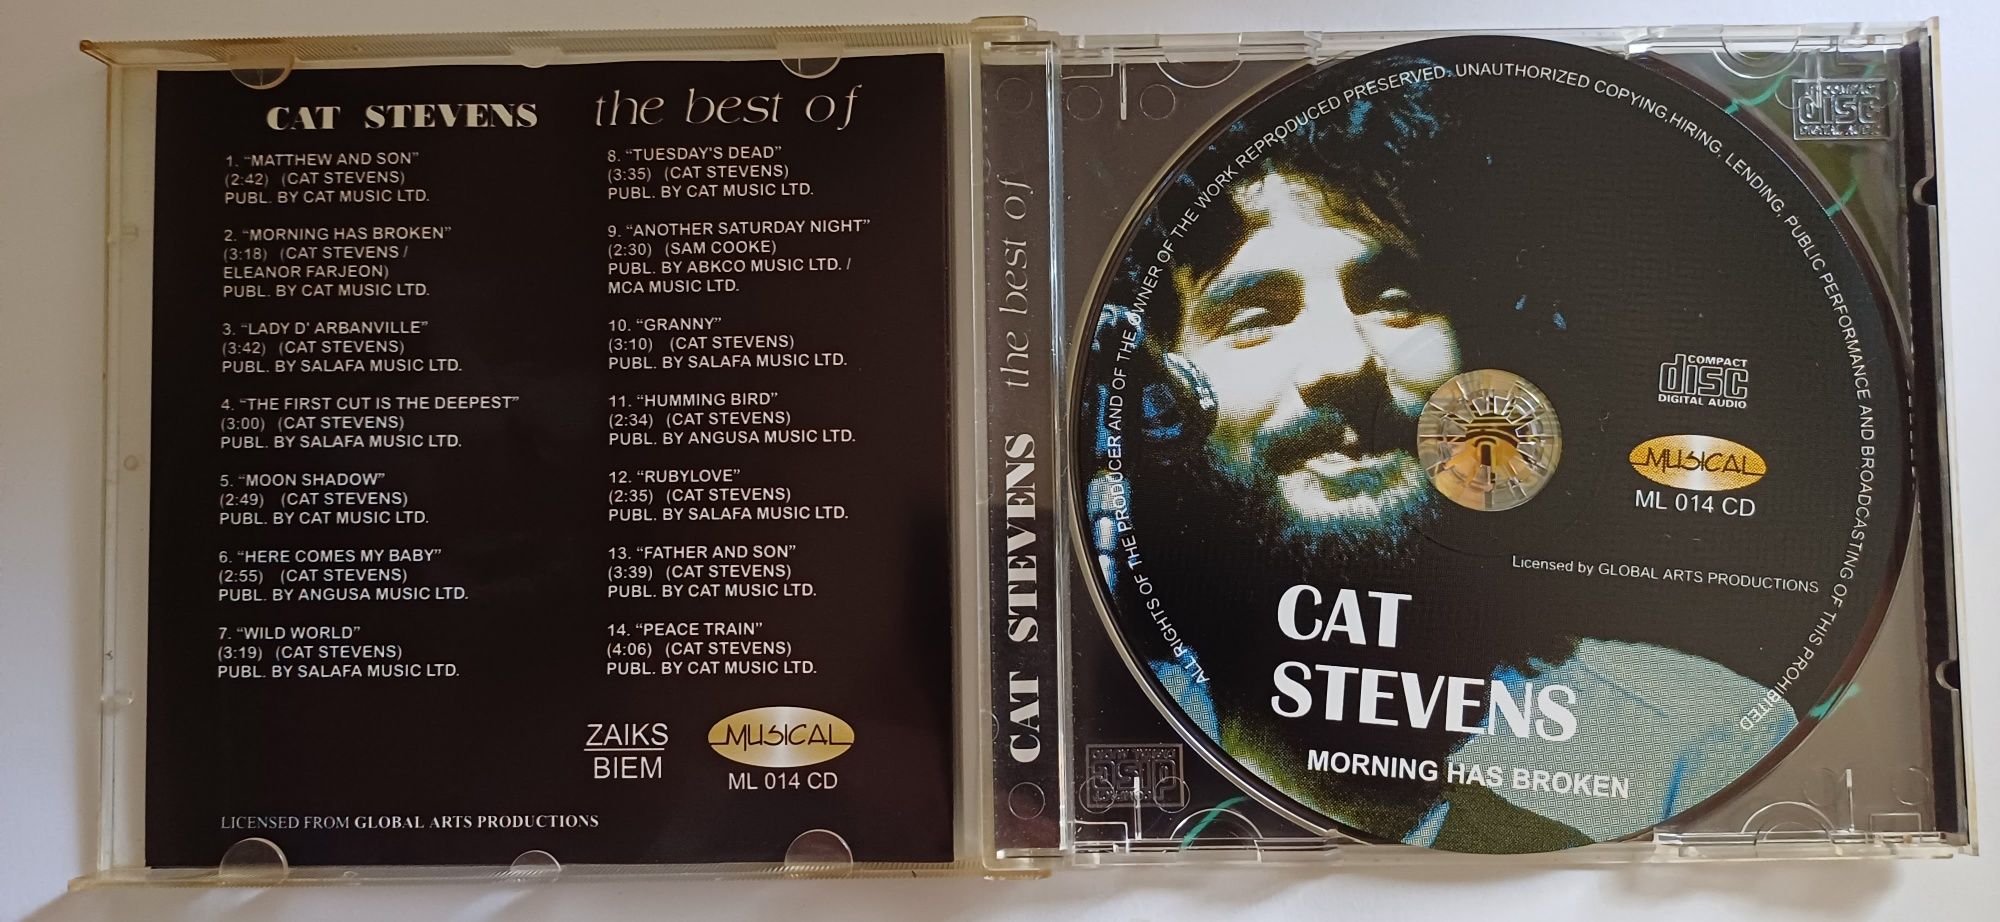 The best of Cat Stevens CD